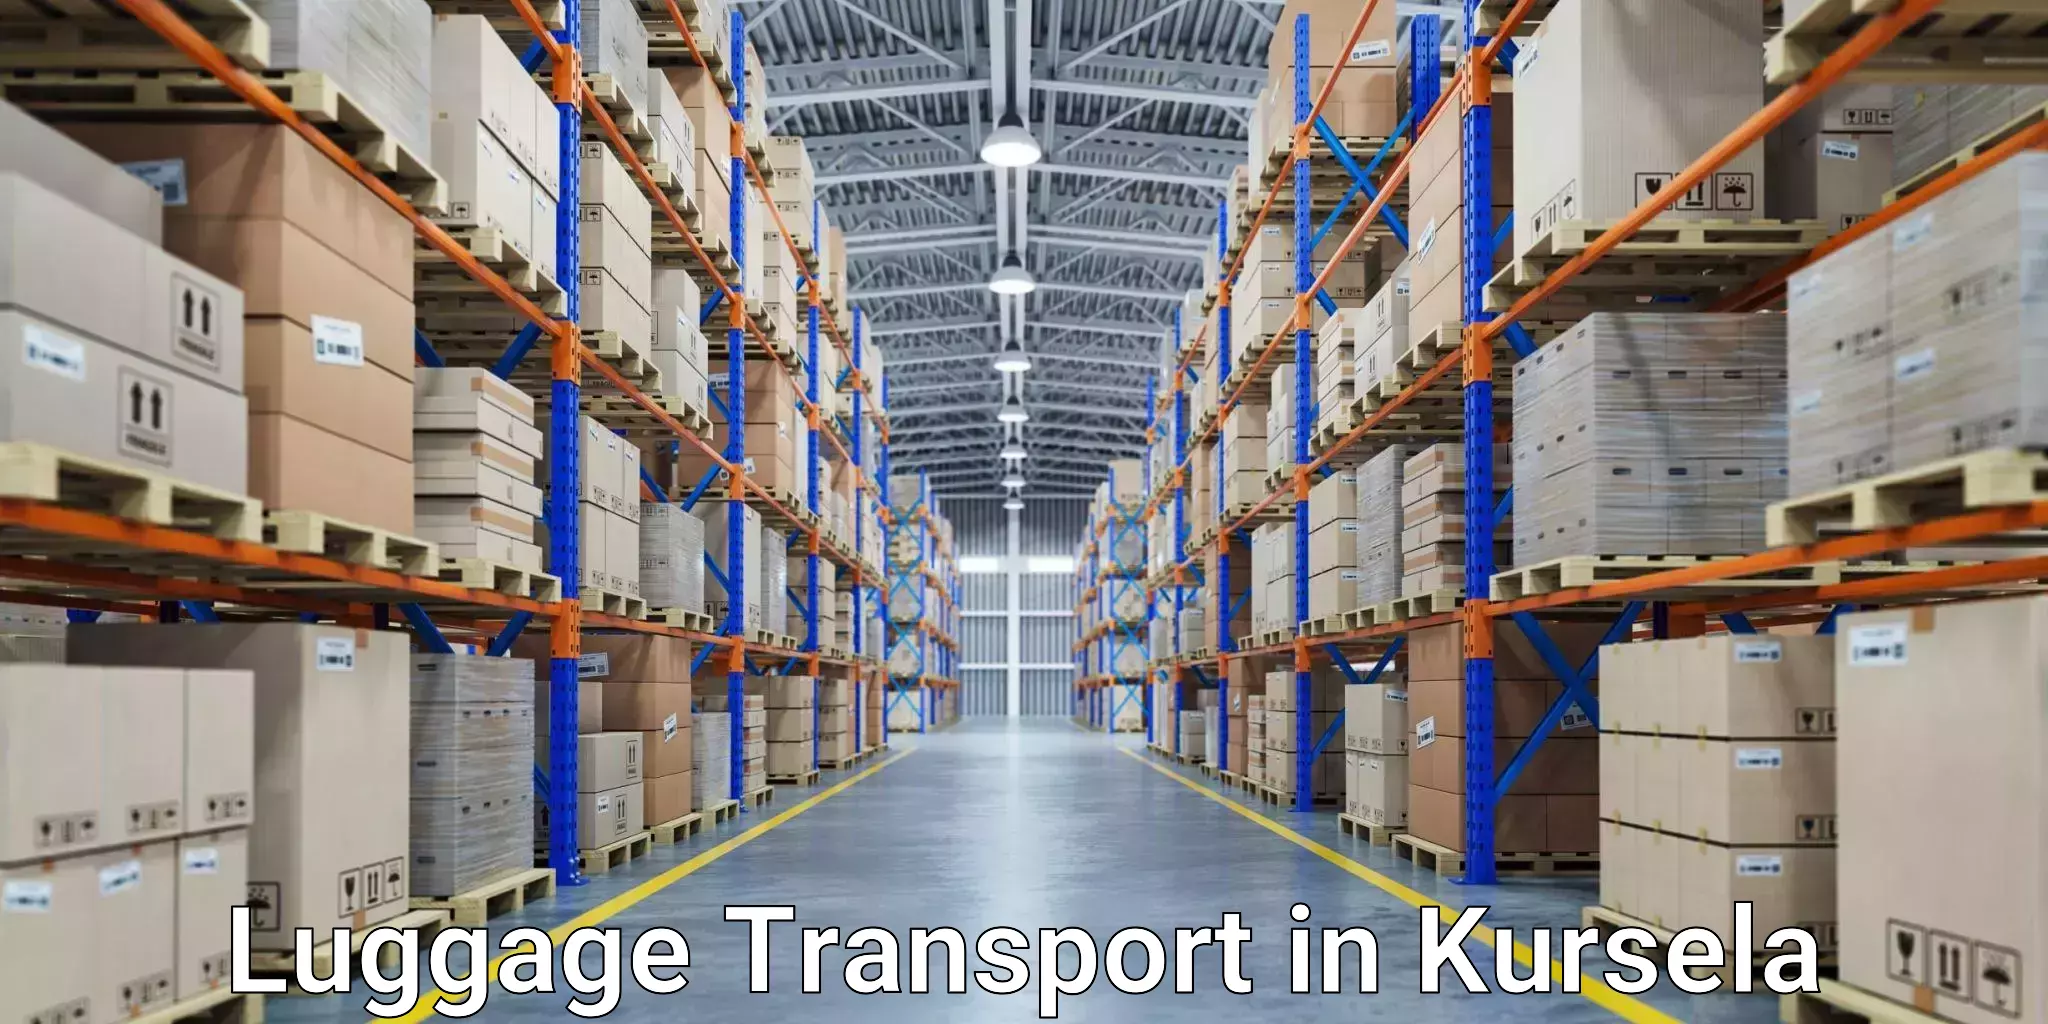 Baggage transport scheduler in Kursela